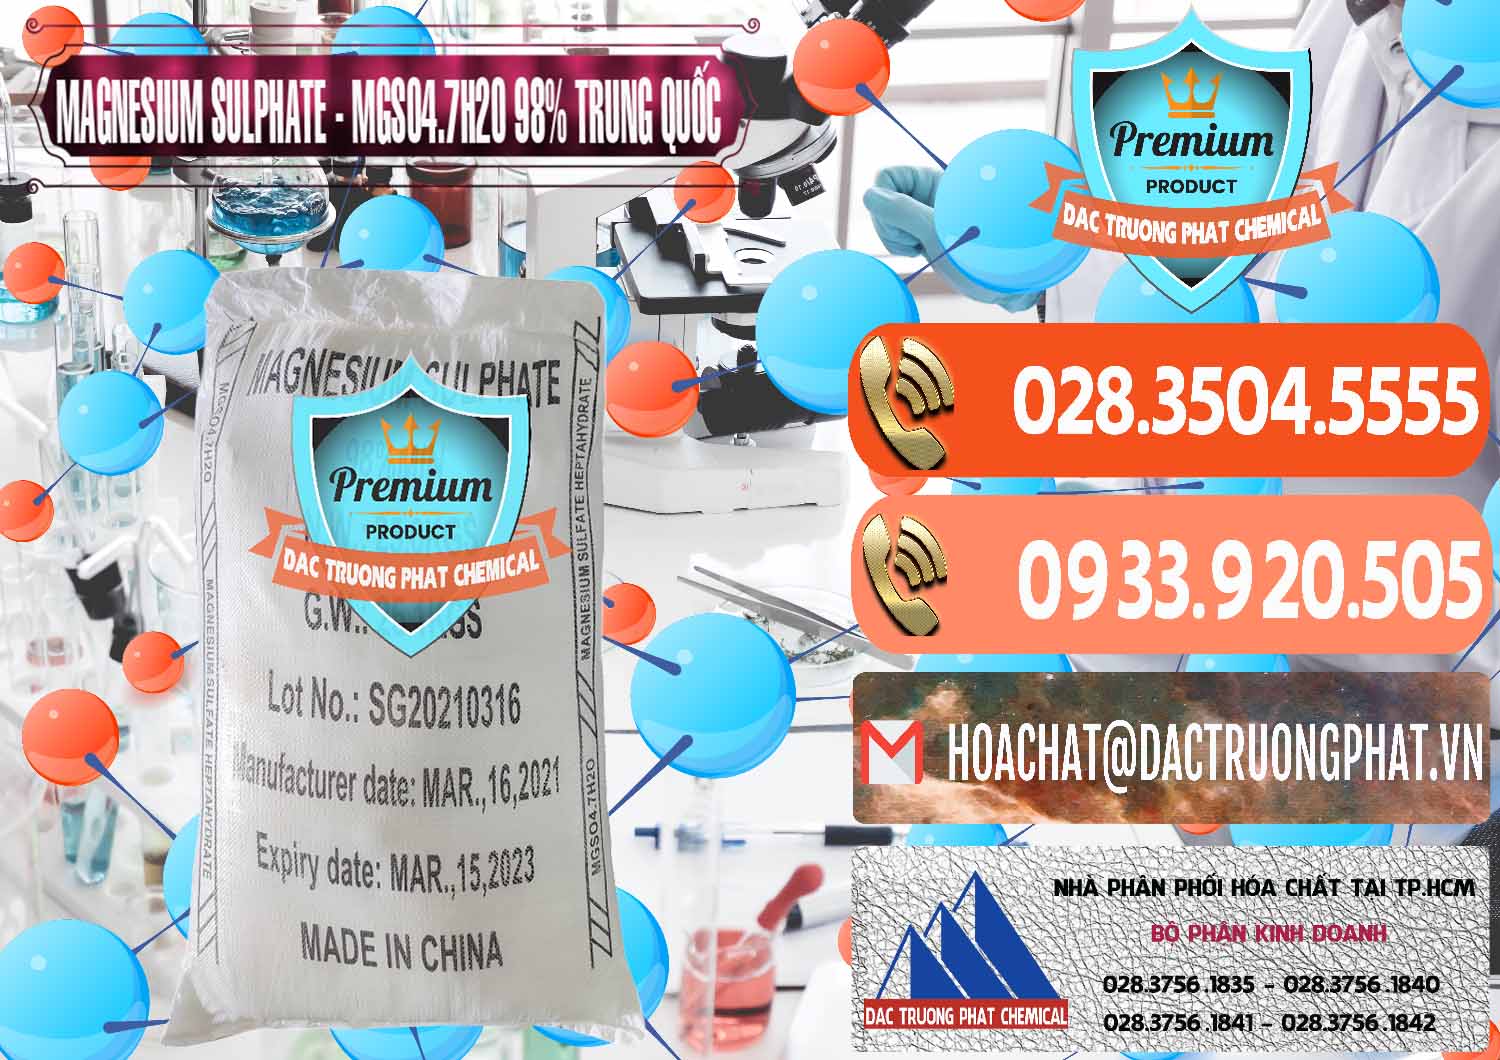 Cty chuyên bán ( cung cấp ) MGSO4.7H2O – Magnesium Sulphate 98% Trung Quốc China - 0229 - Nơi cung cấp và kinh doanh hóa chất tại TP.HCM - hoachatmientay.com